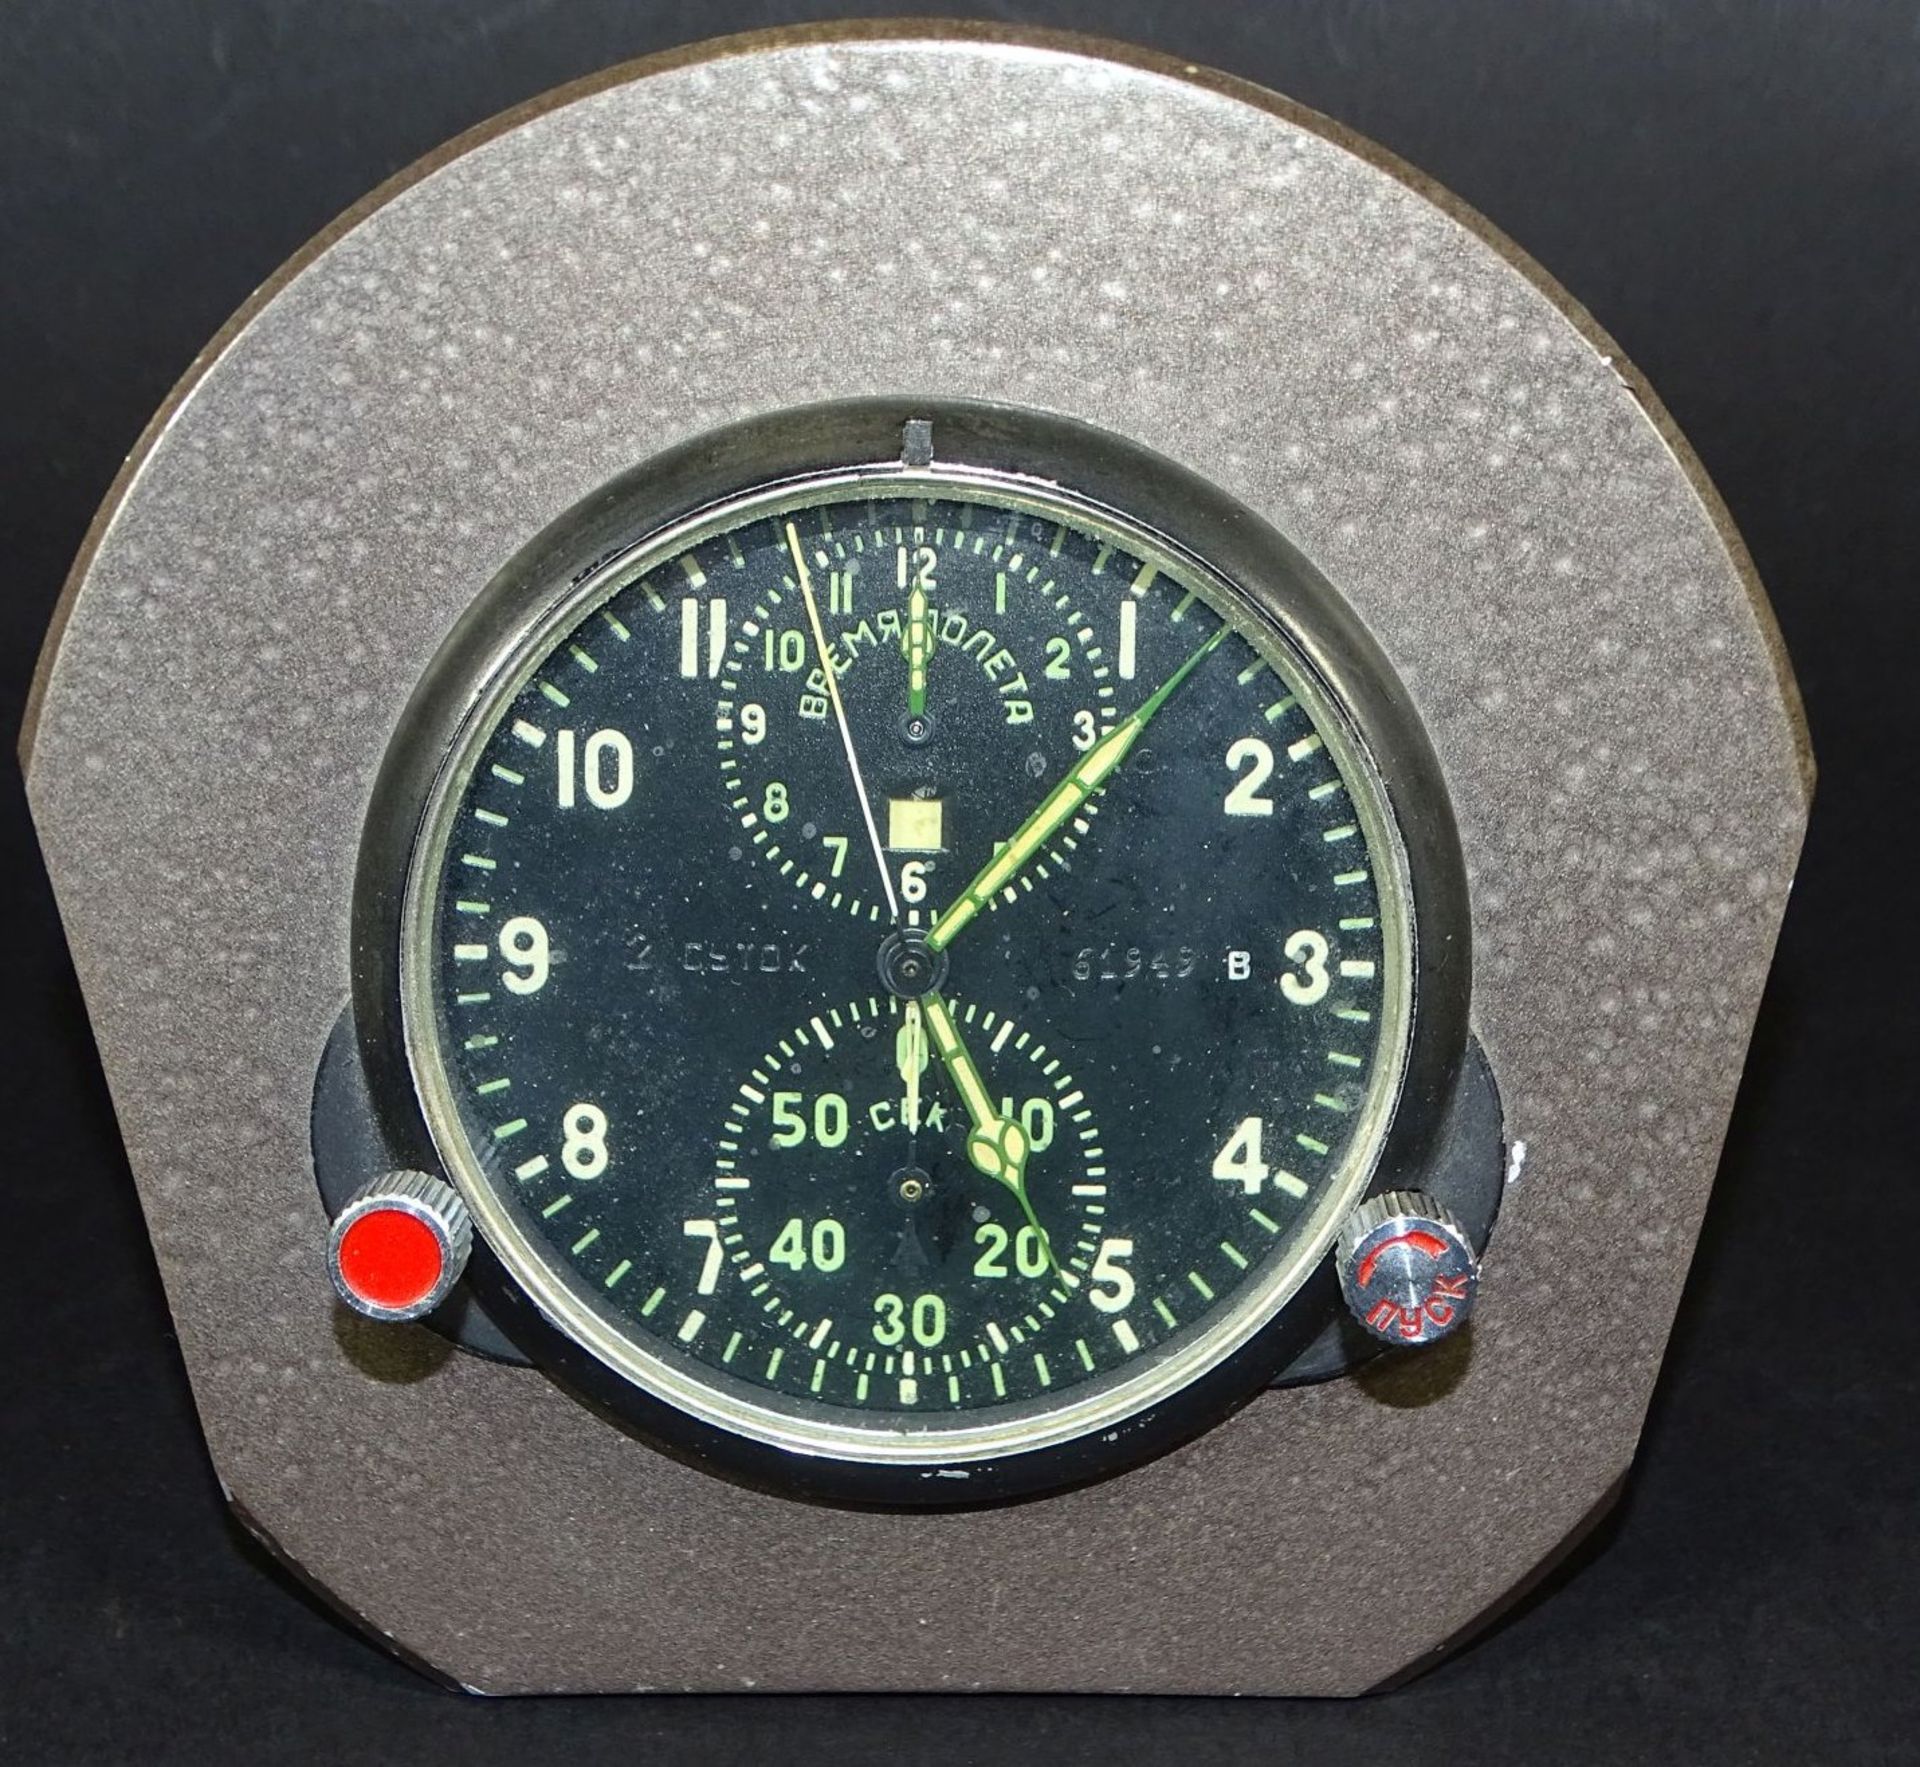 russische Flugzeug Cockpit-Uhr "Siegeszeit", Metallgehäuse, 27 Volt, gut erhalten, 13c13 cm, 60/70-